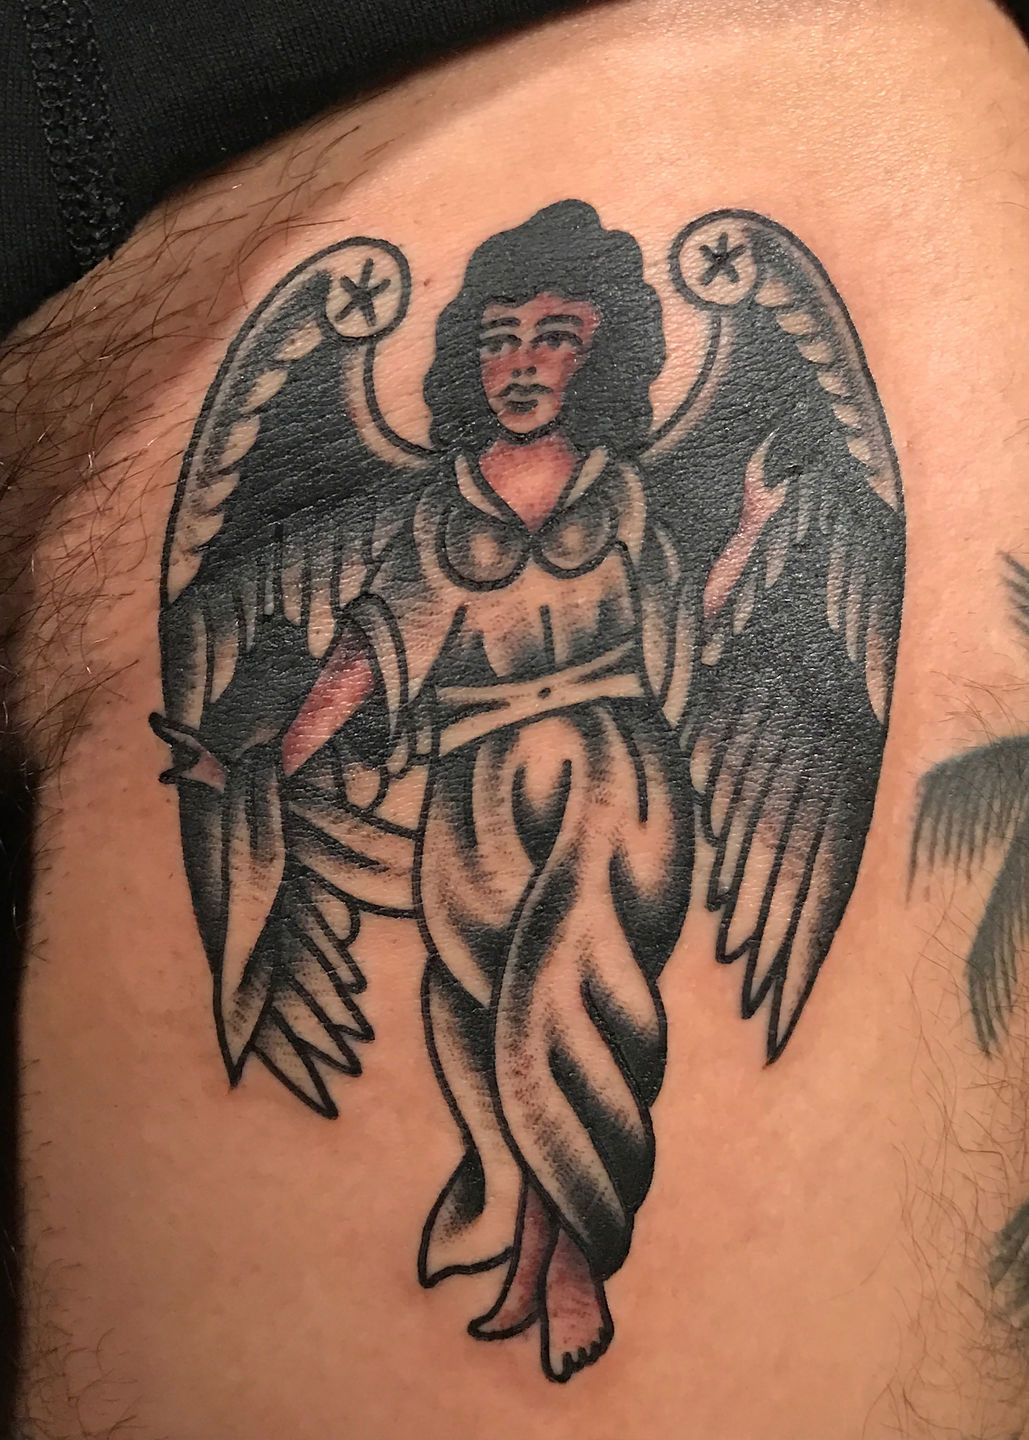 Dark Angel Tattoo by Zindy on DeviantArt